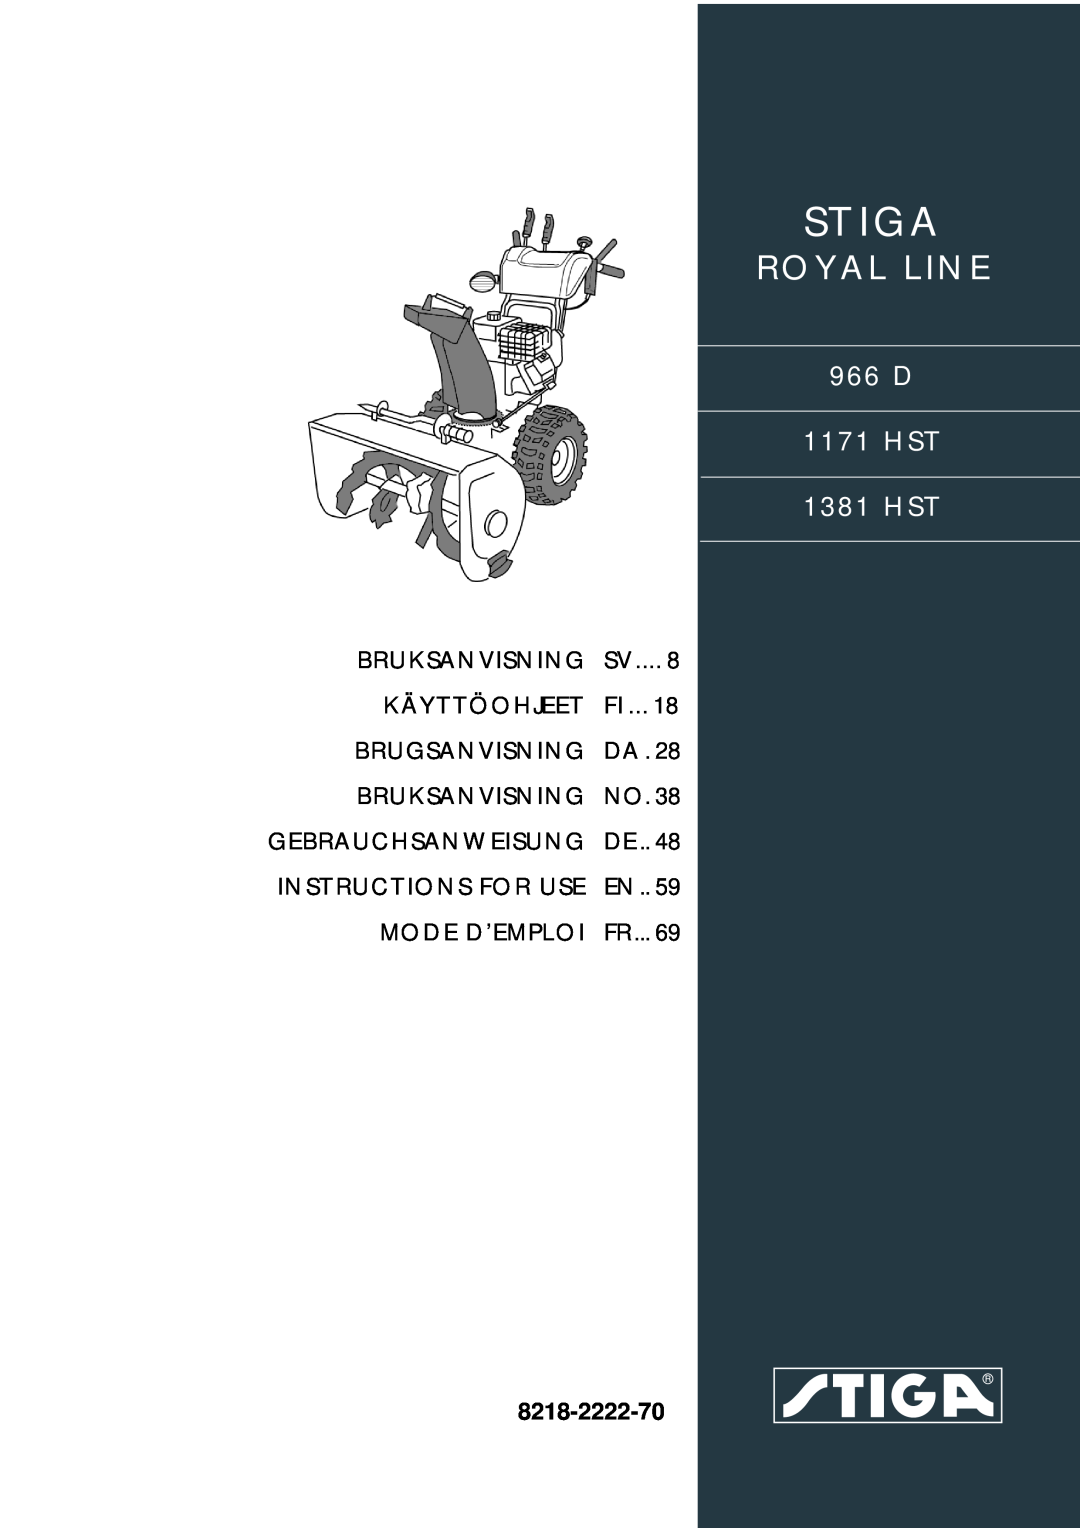 Stiga manual Stiga, Royal Line, 966 D 1171 HST 1381 HST, Bruksanvisning, Käyttöohjeet, Brugsanvisning, Mode D’Emploi 